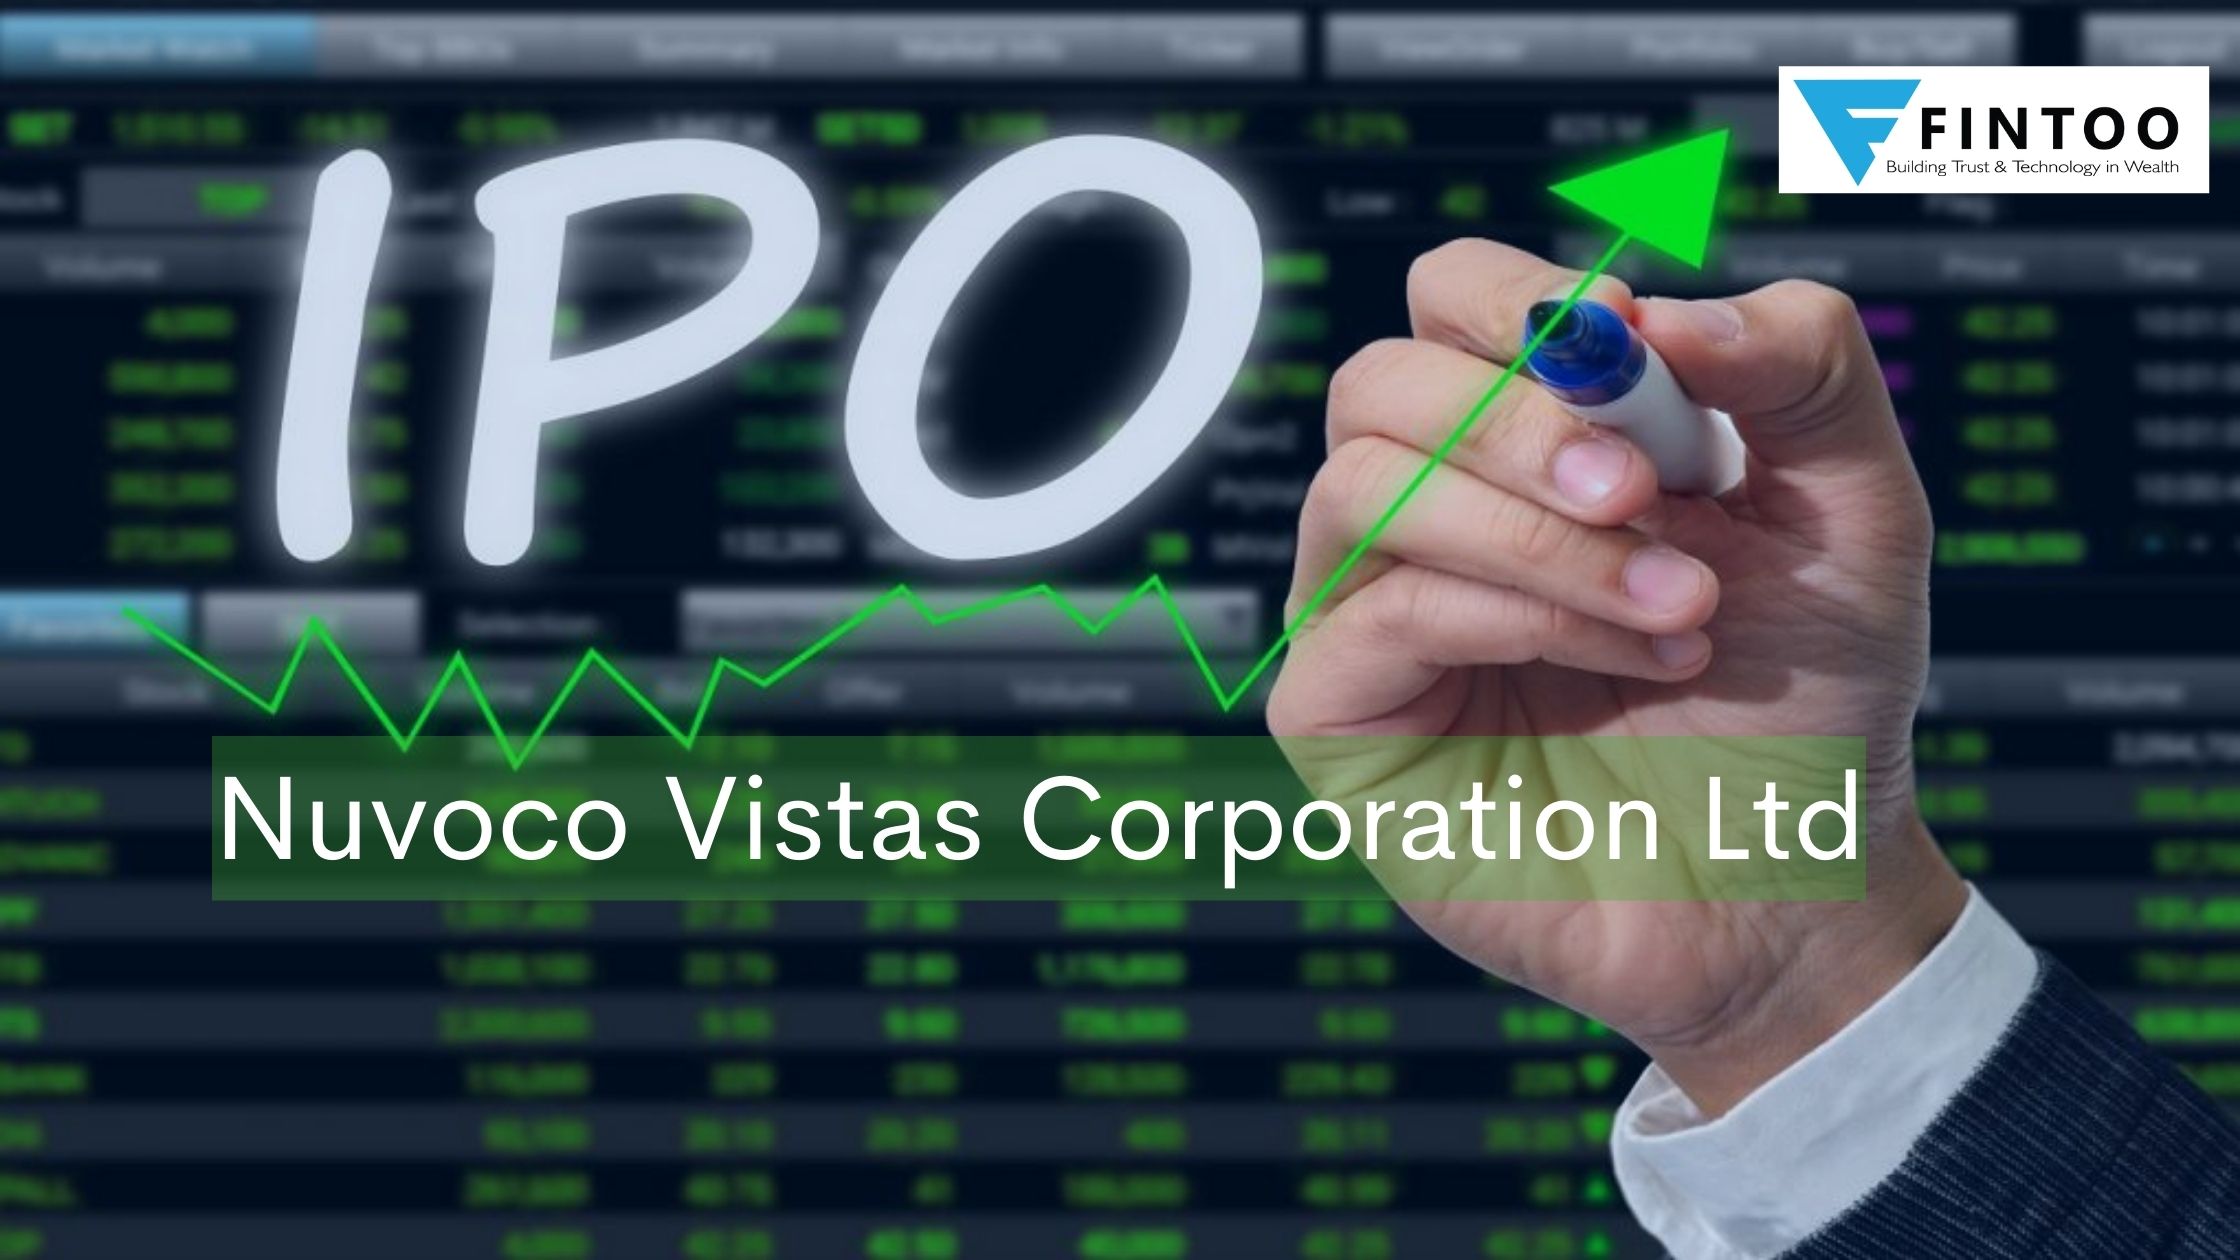 Nuvoco Vistas Corporation Ltd